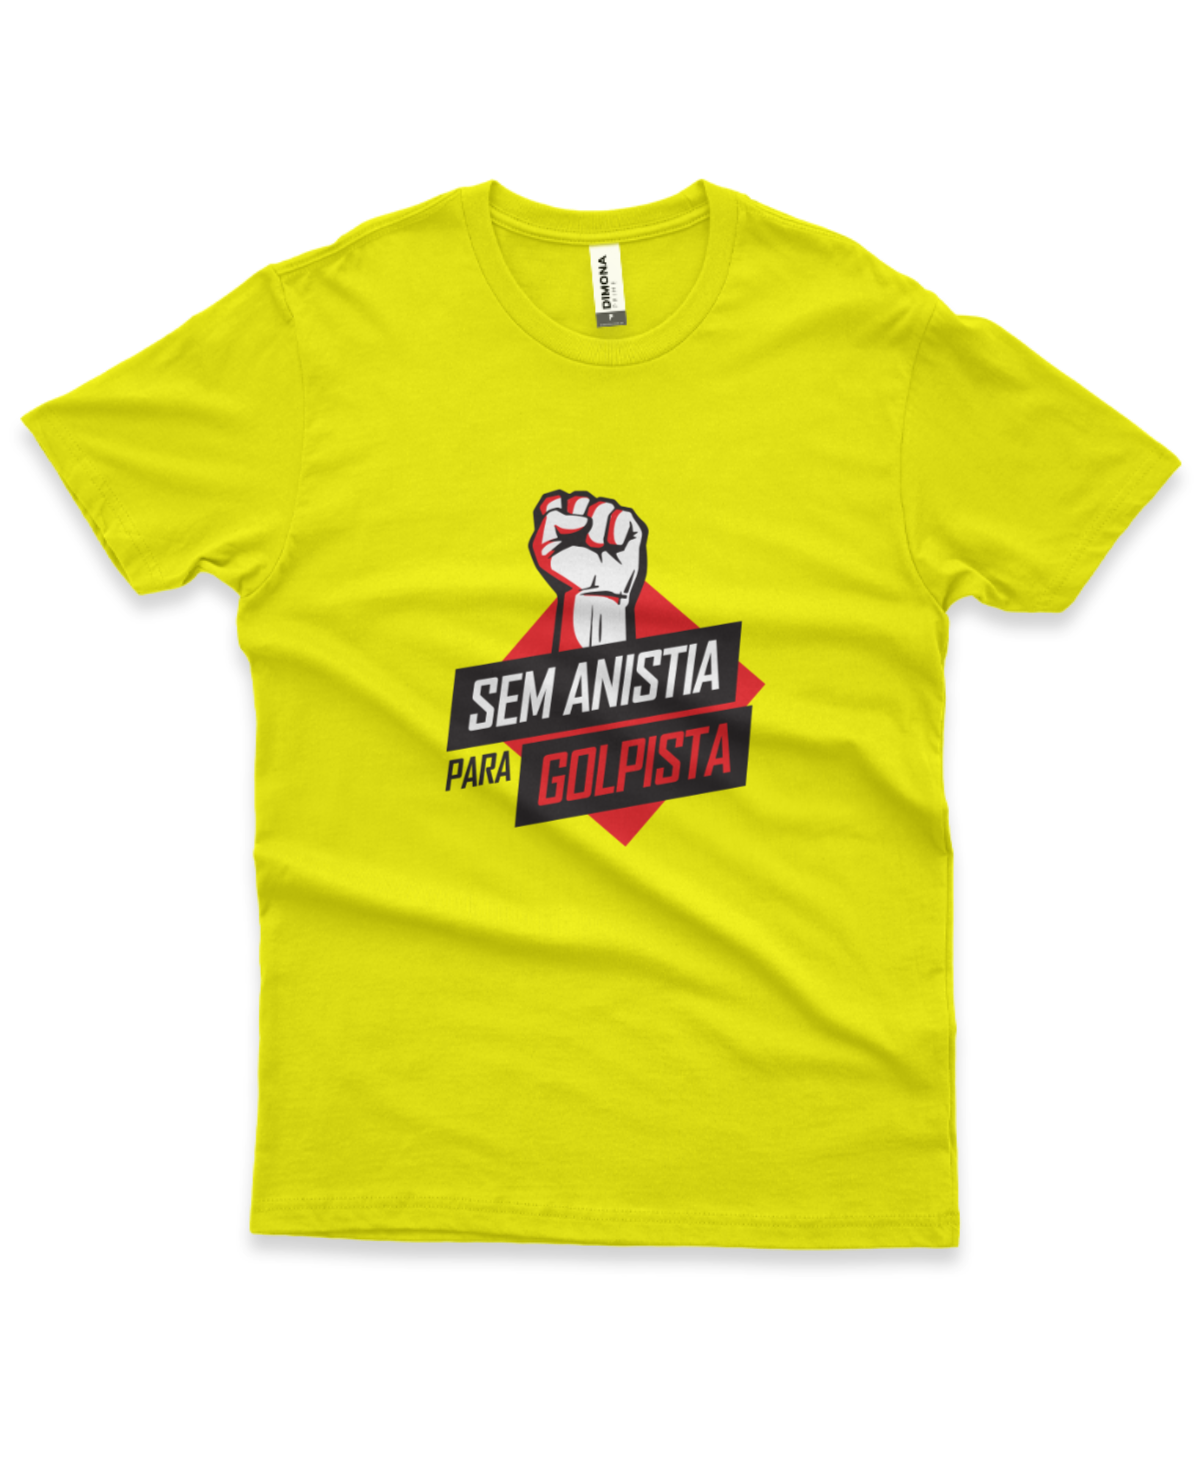 camiseta masculina cor amarelo canário com ilustração da mão fechada em punho como forma de protesto e a frase "sem anistia para golpista"